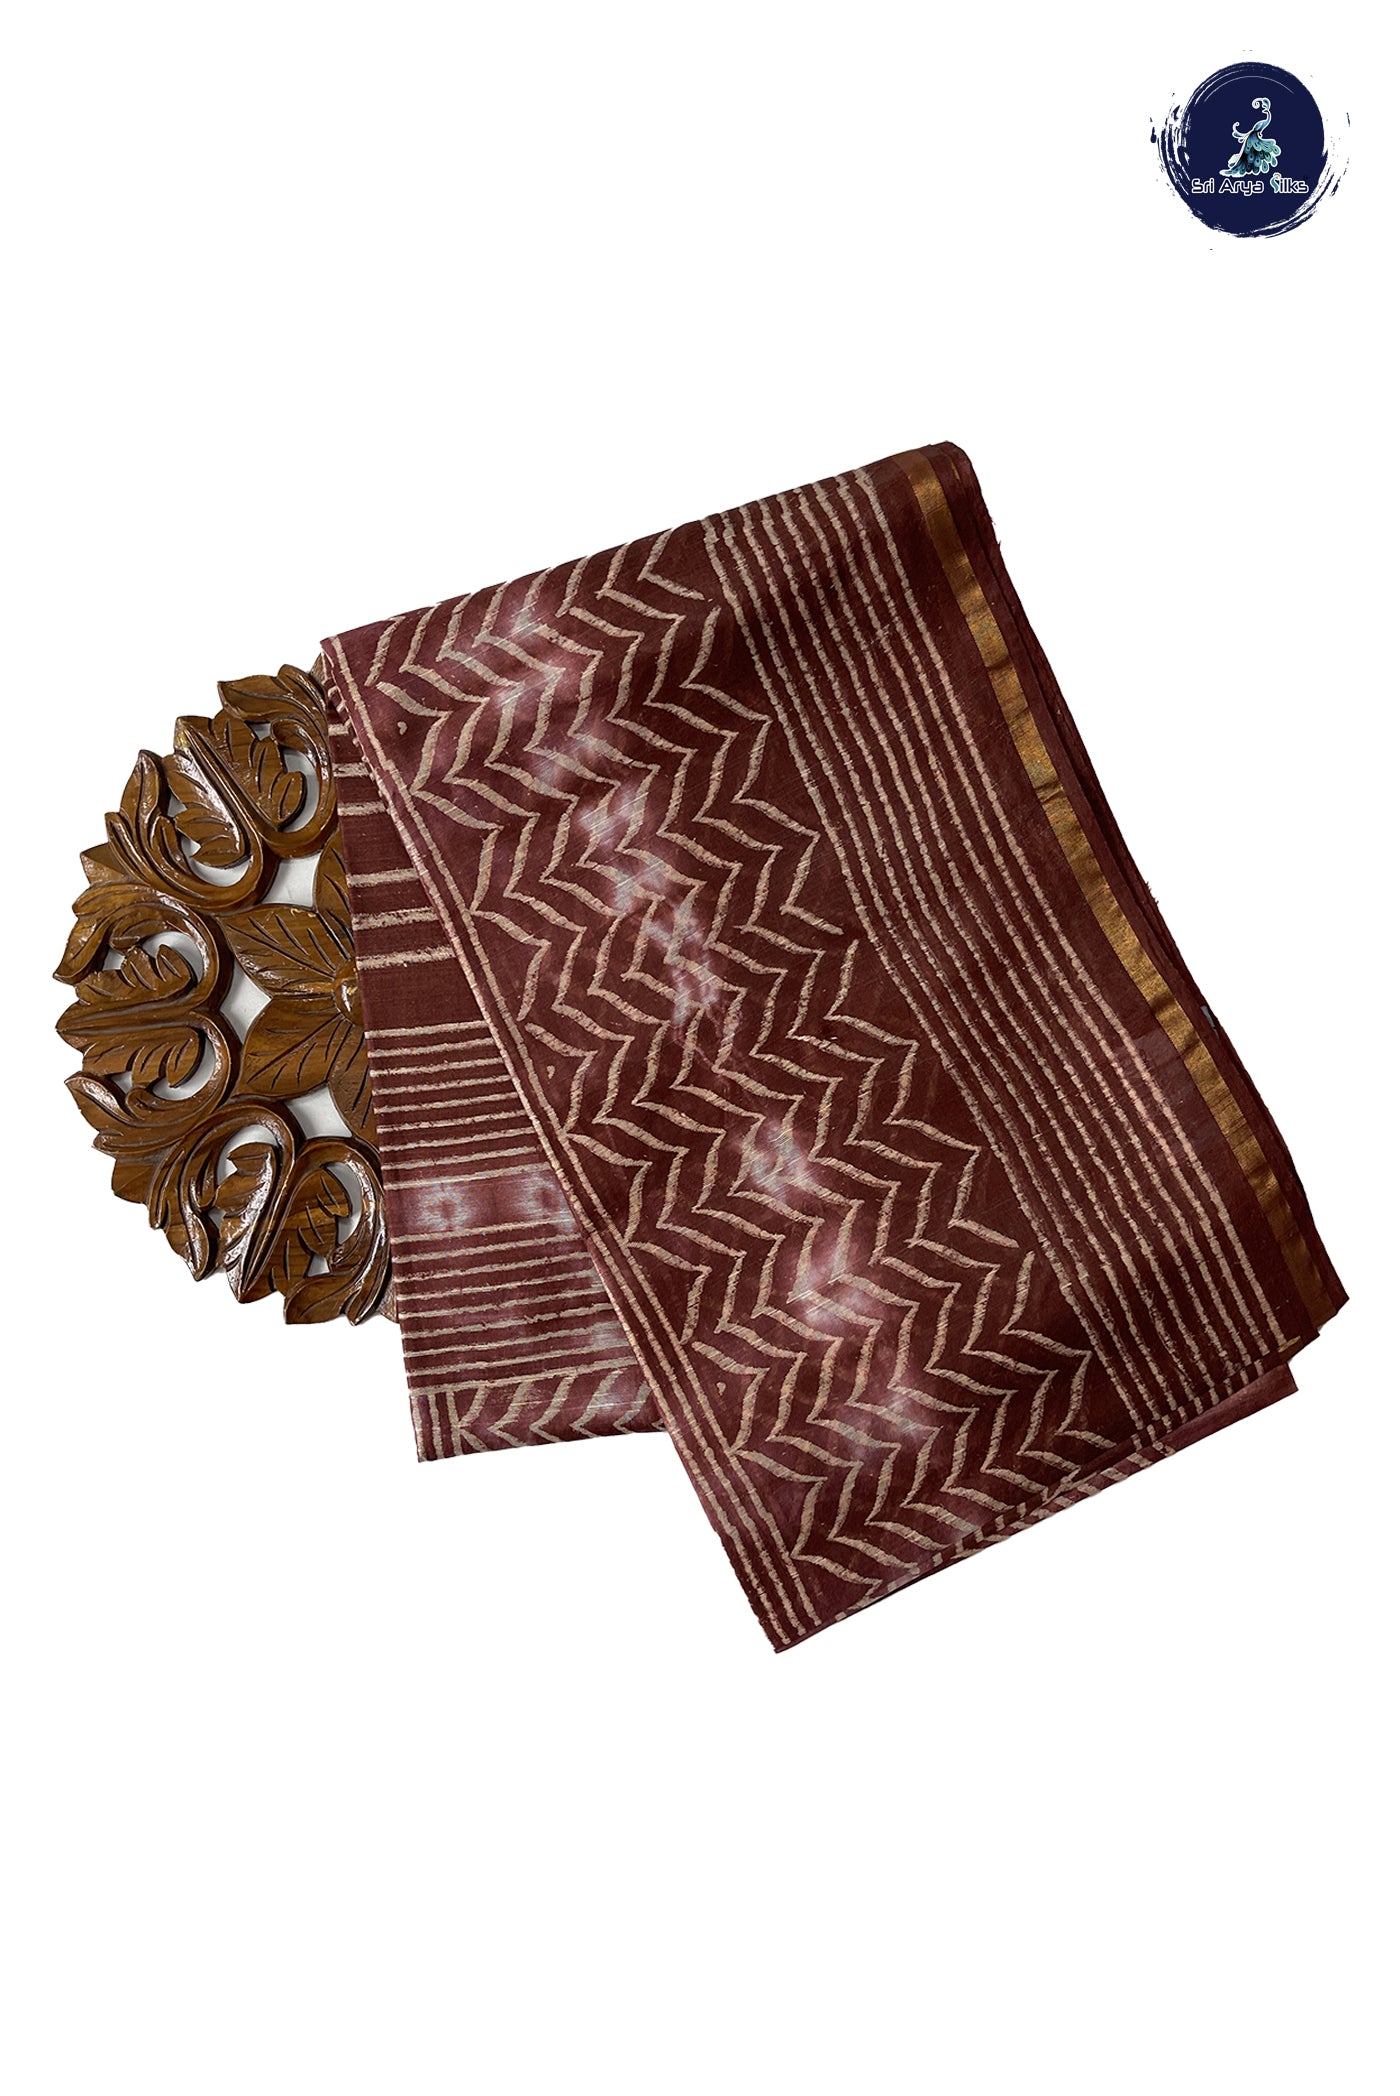 Brown Chanderi Silk Cotton Saree With Bagru Print Pattern